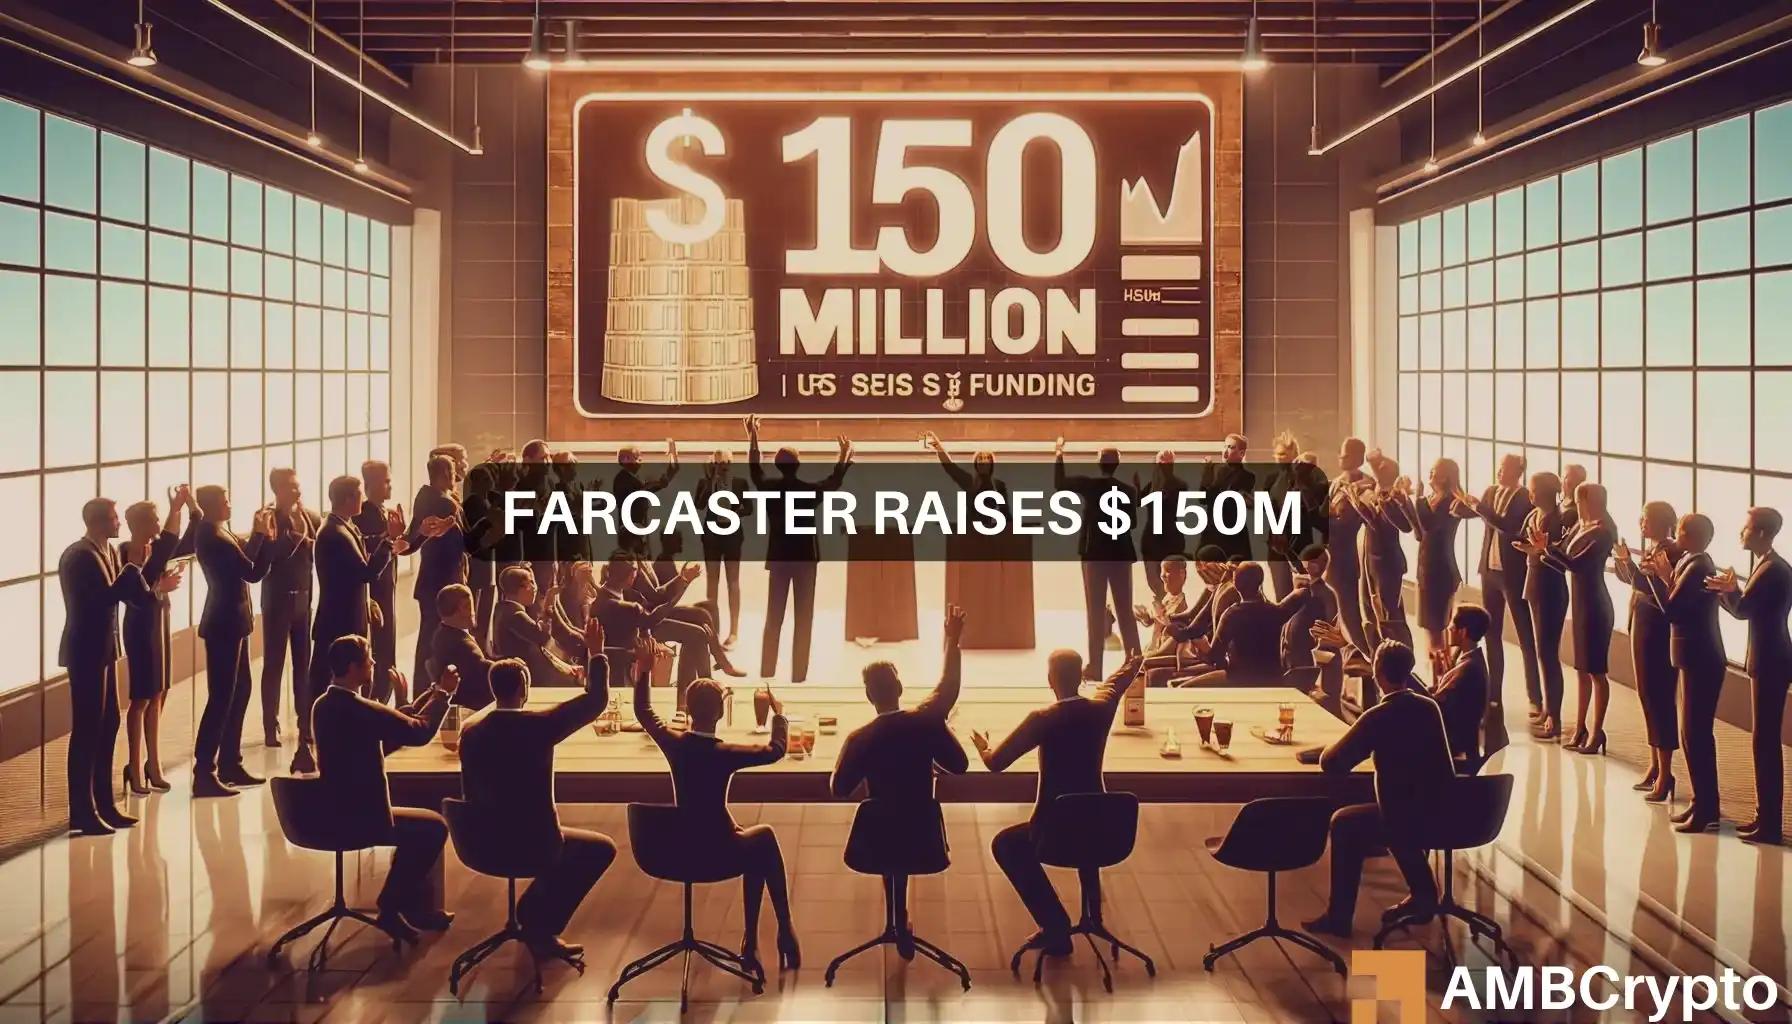 Farcaster raises $150M